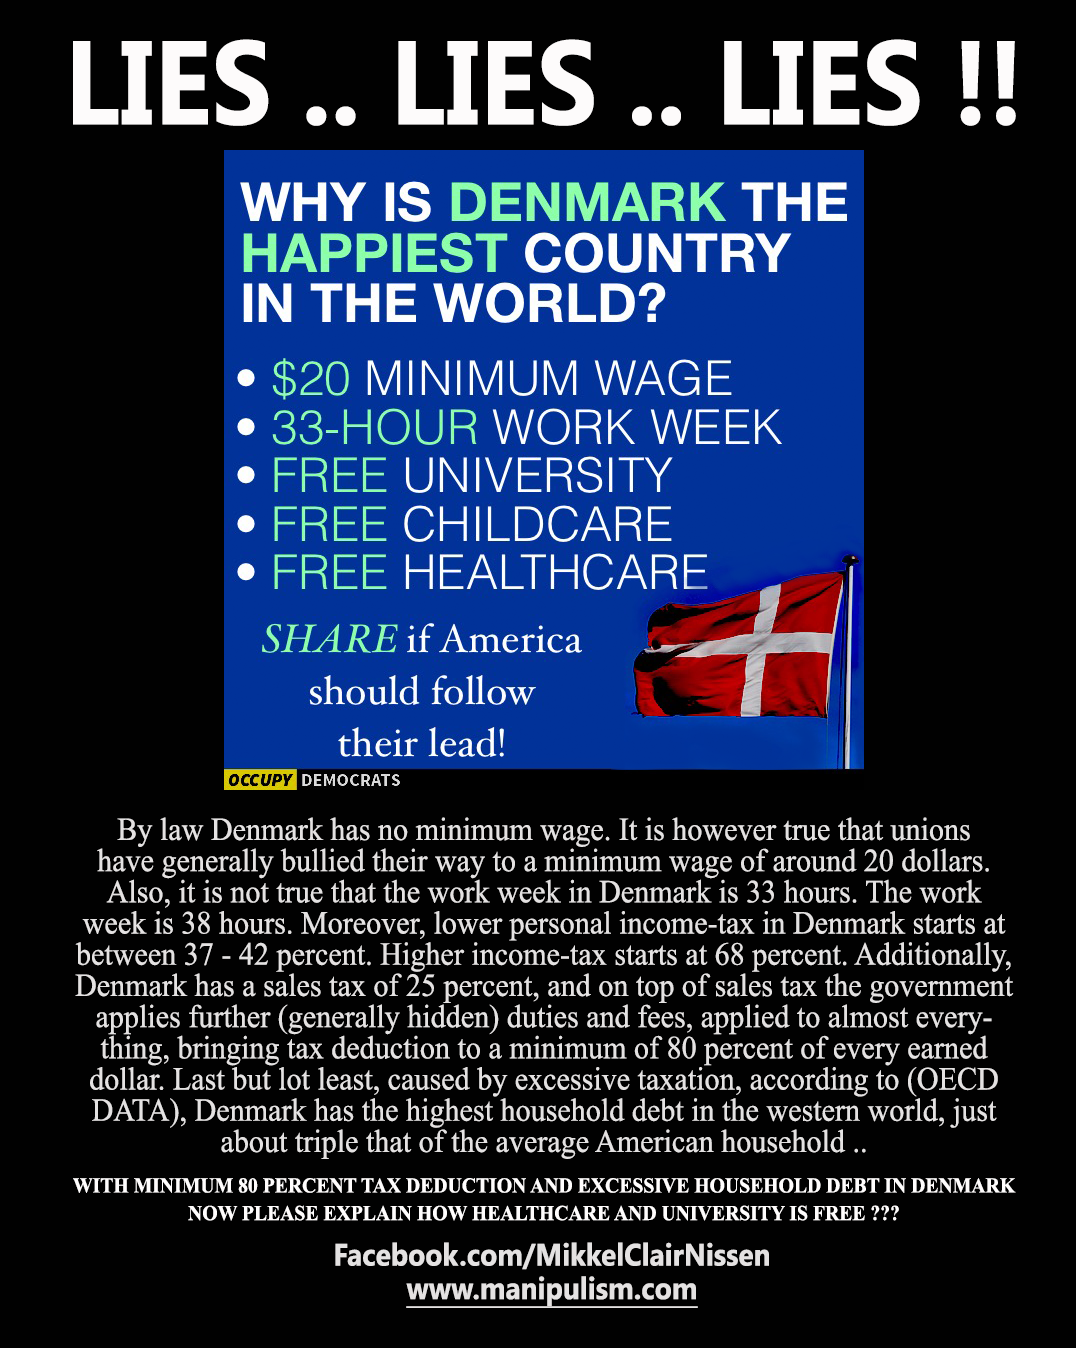 Denmark LIES